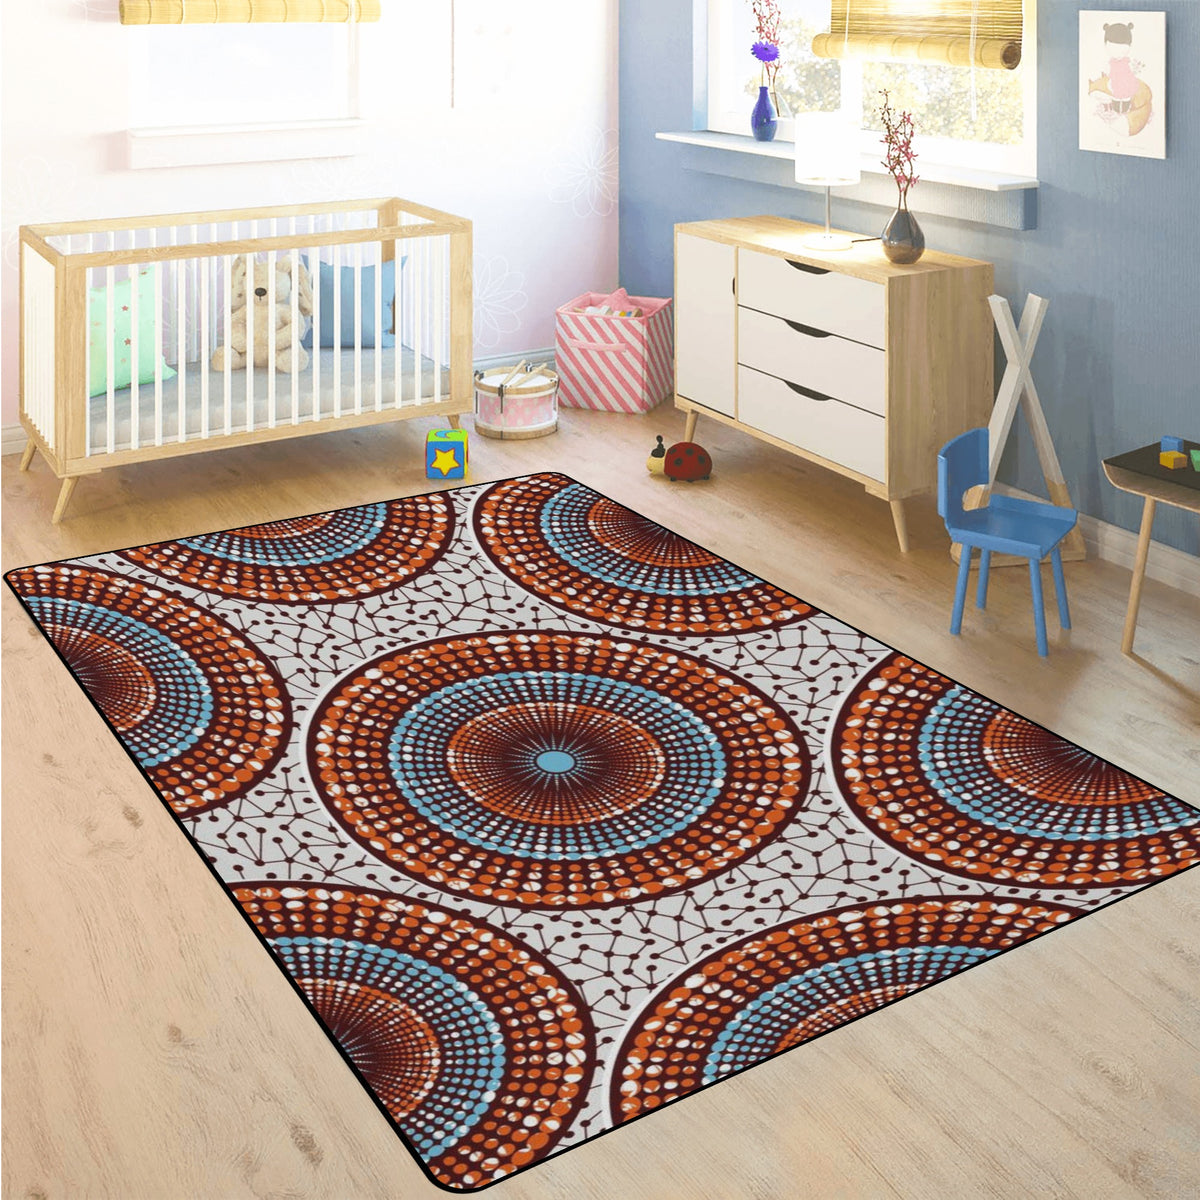 Living Room Carpet Rug in African Ankara Prints pop